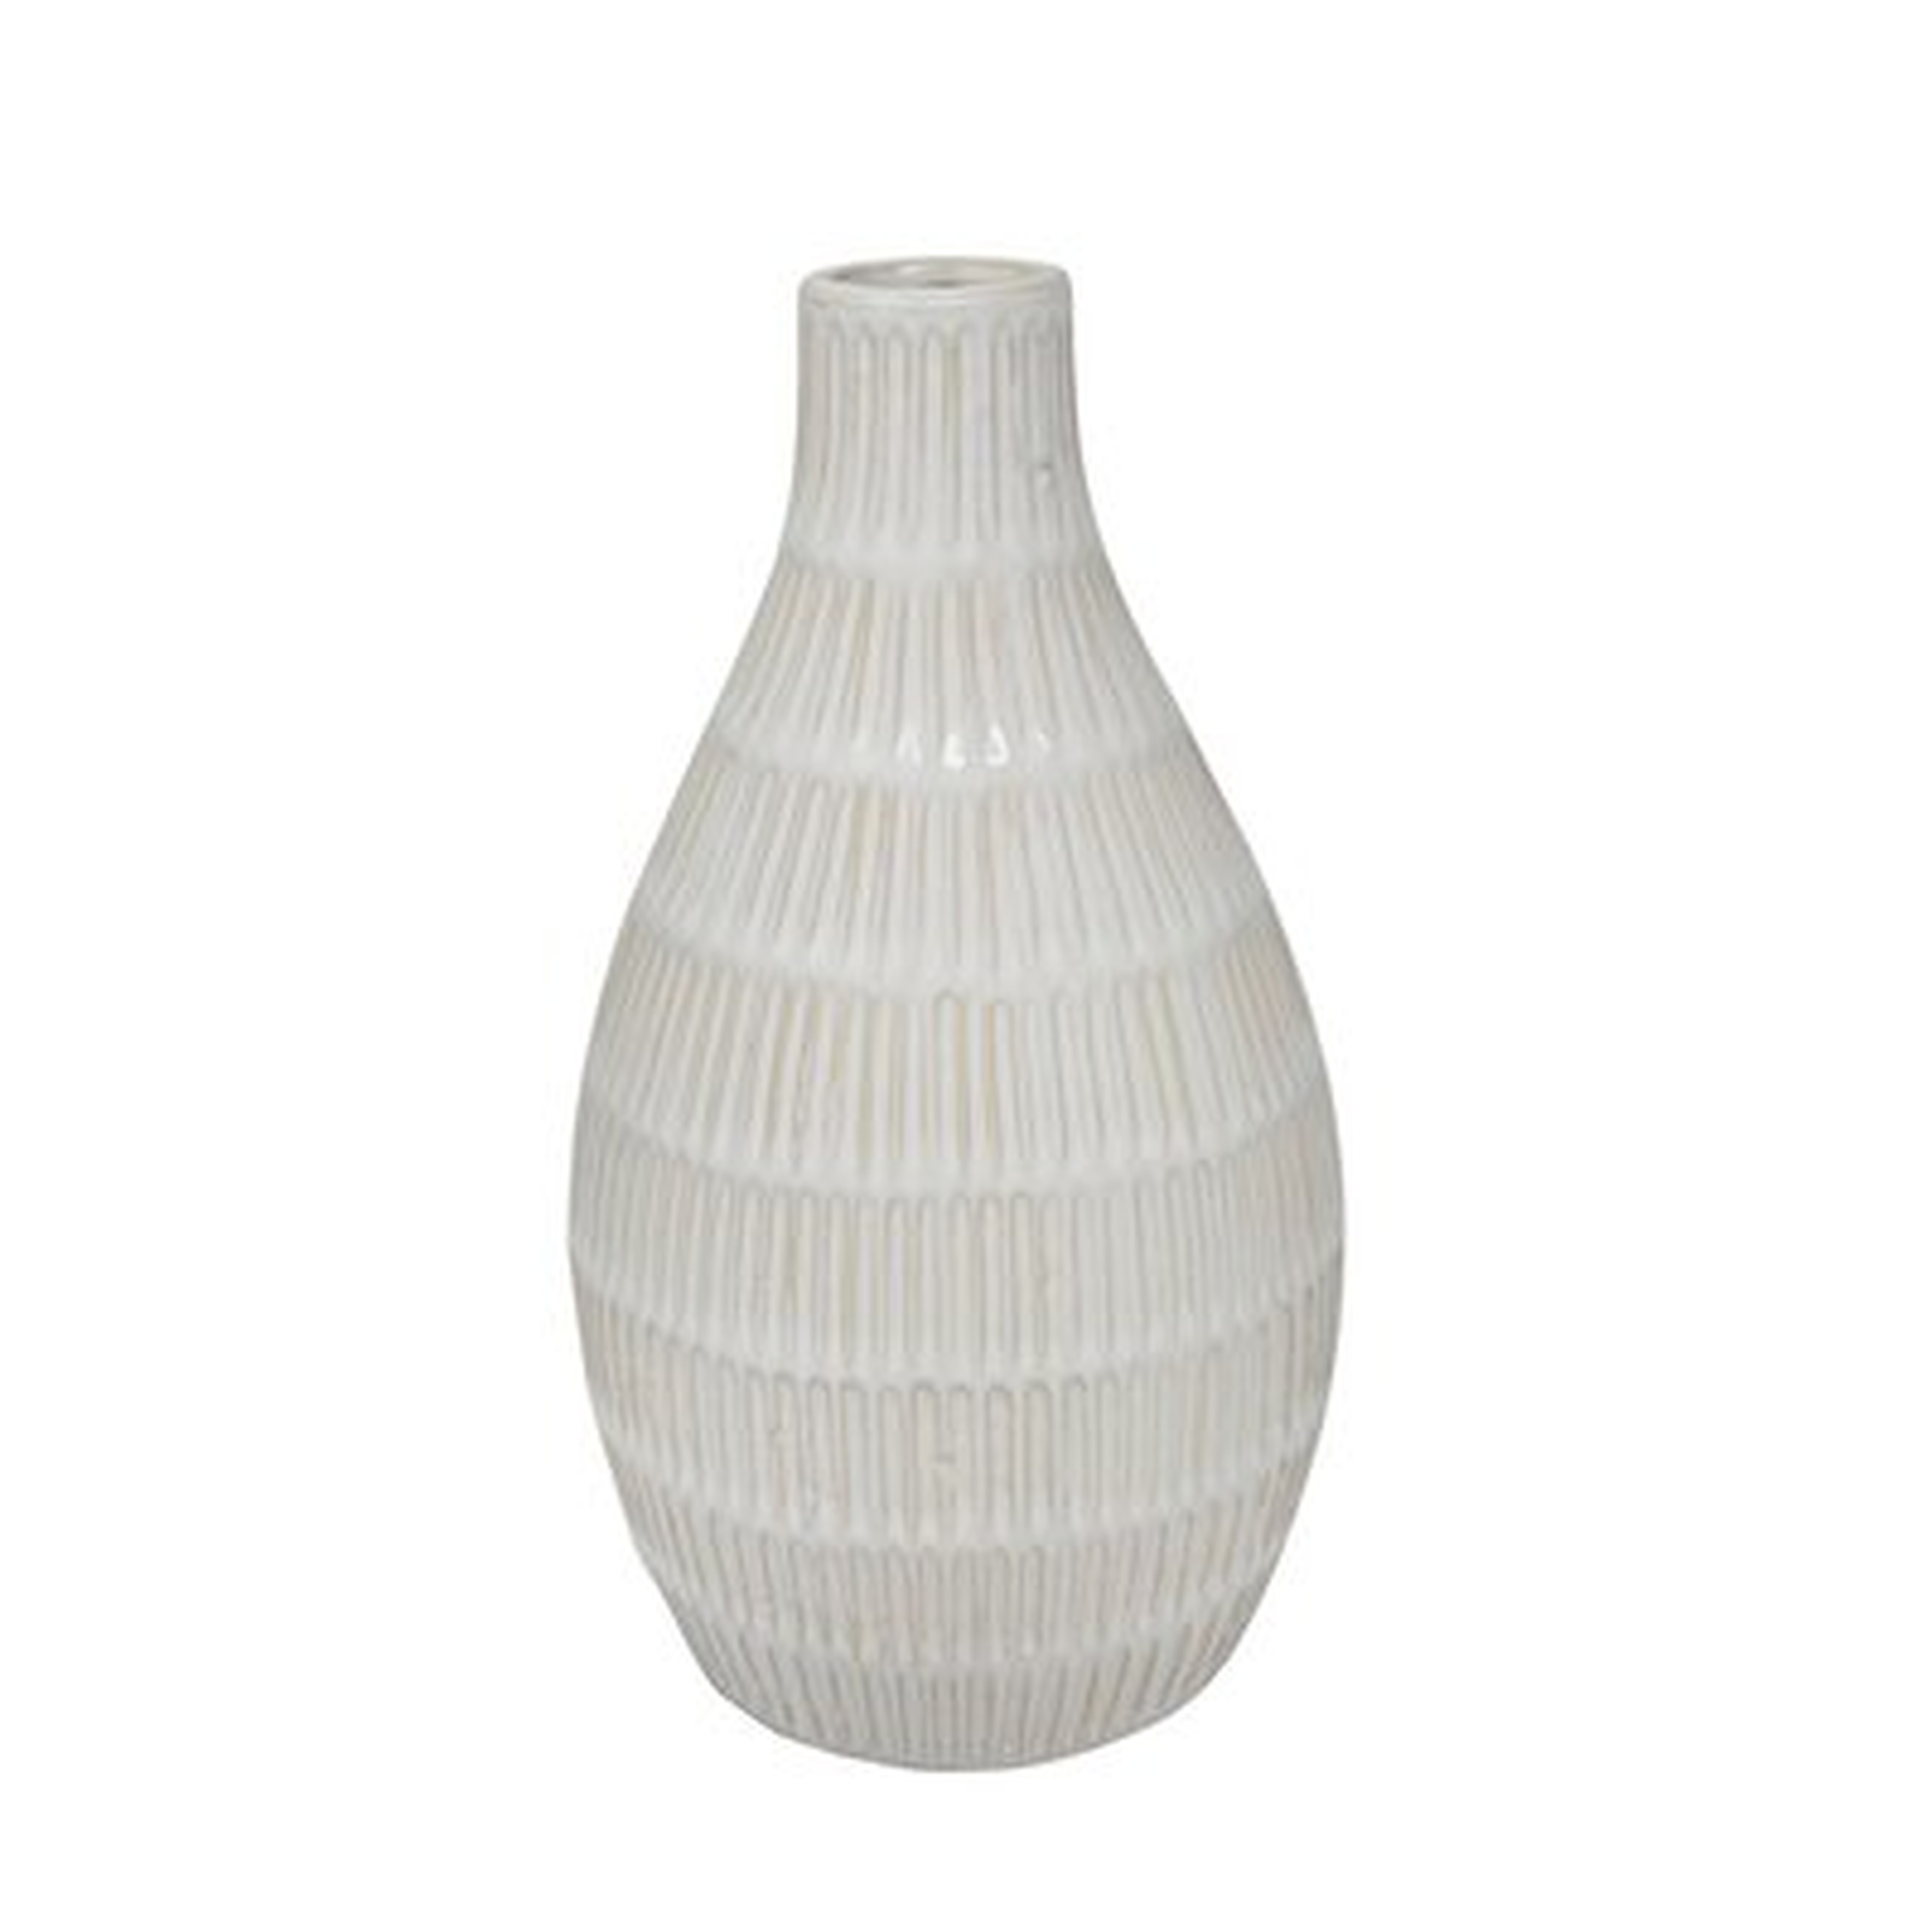 Domingue Ceramic Tribal Look Table Vase - Wayfair